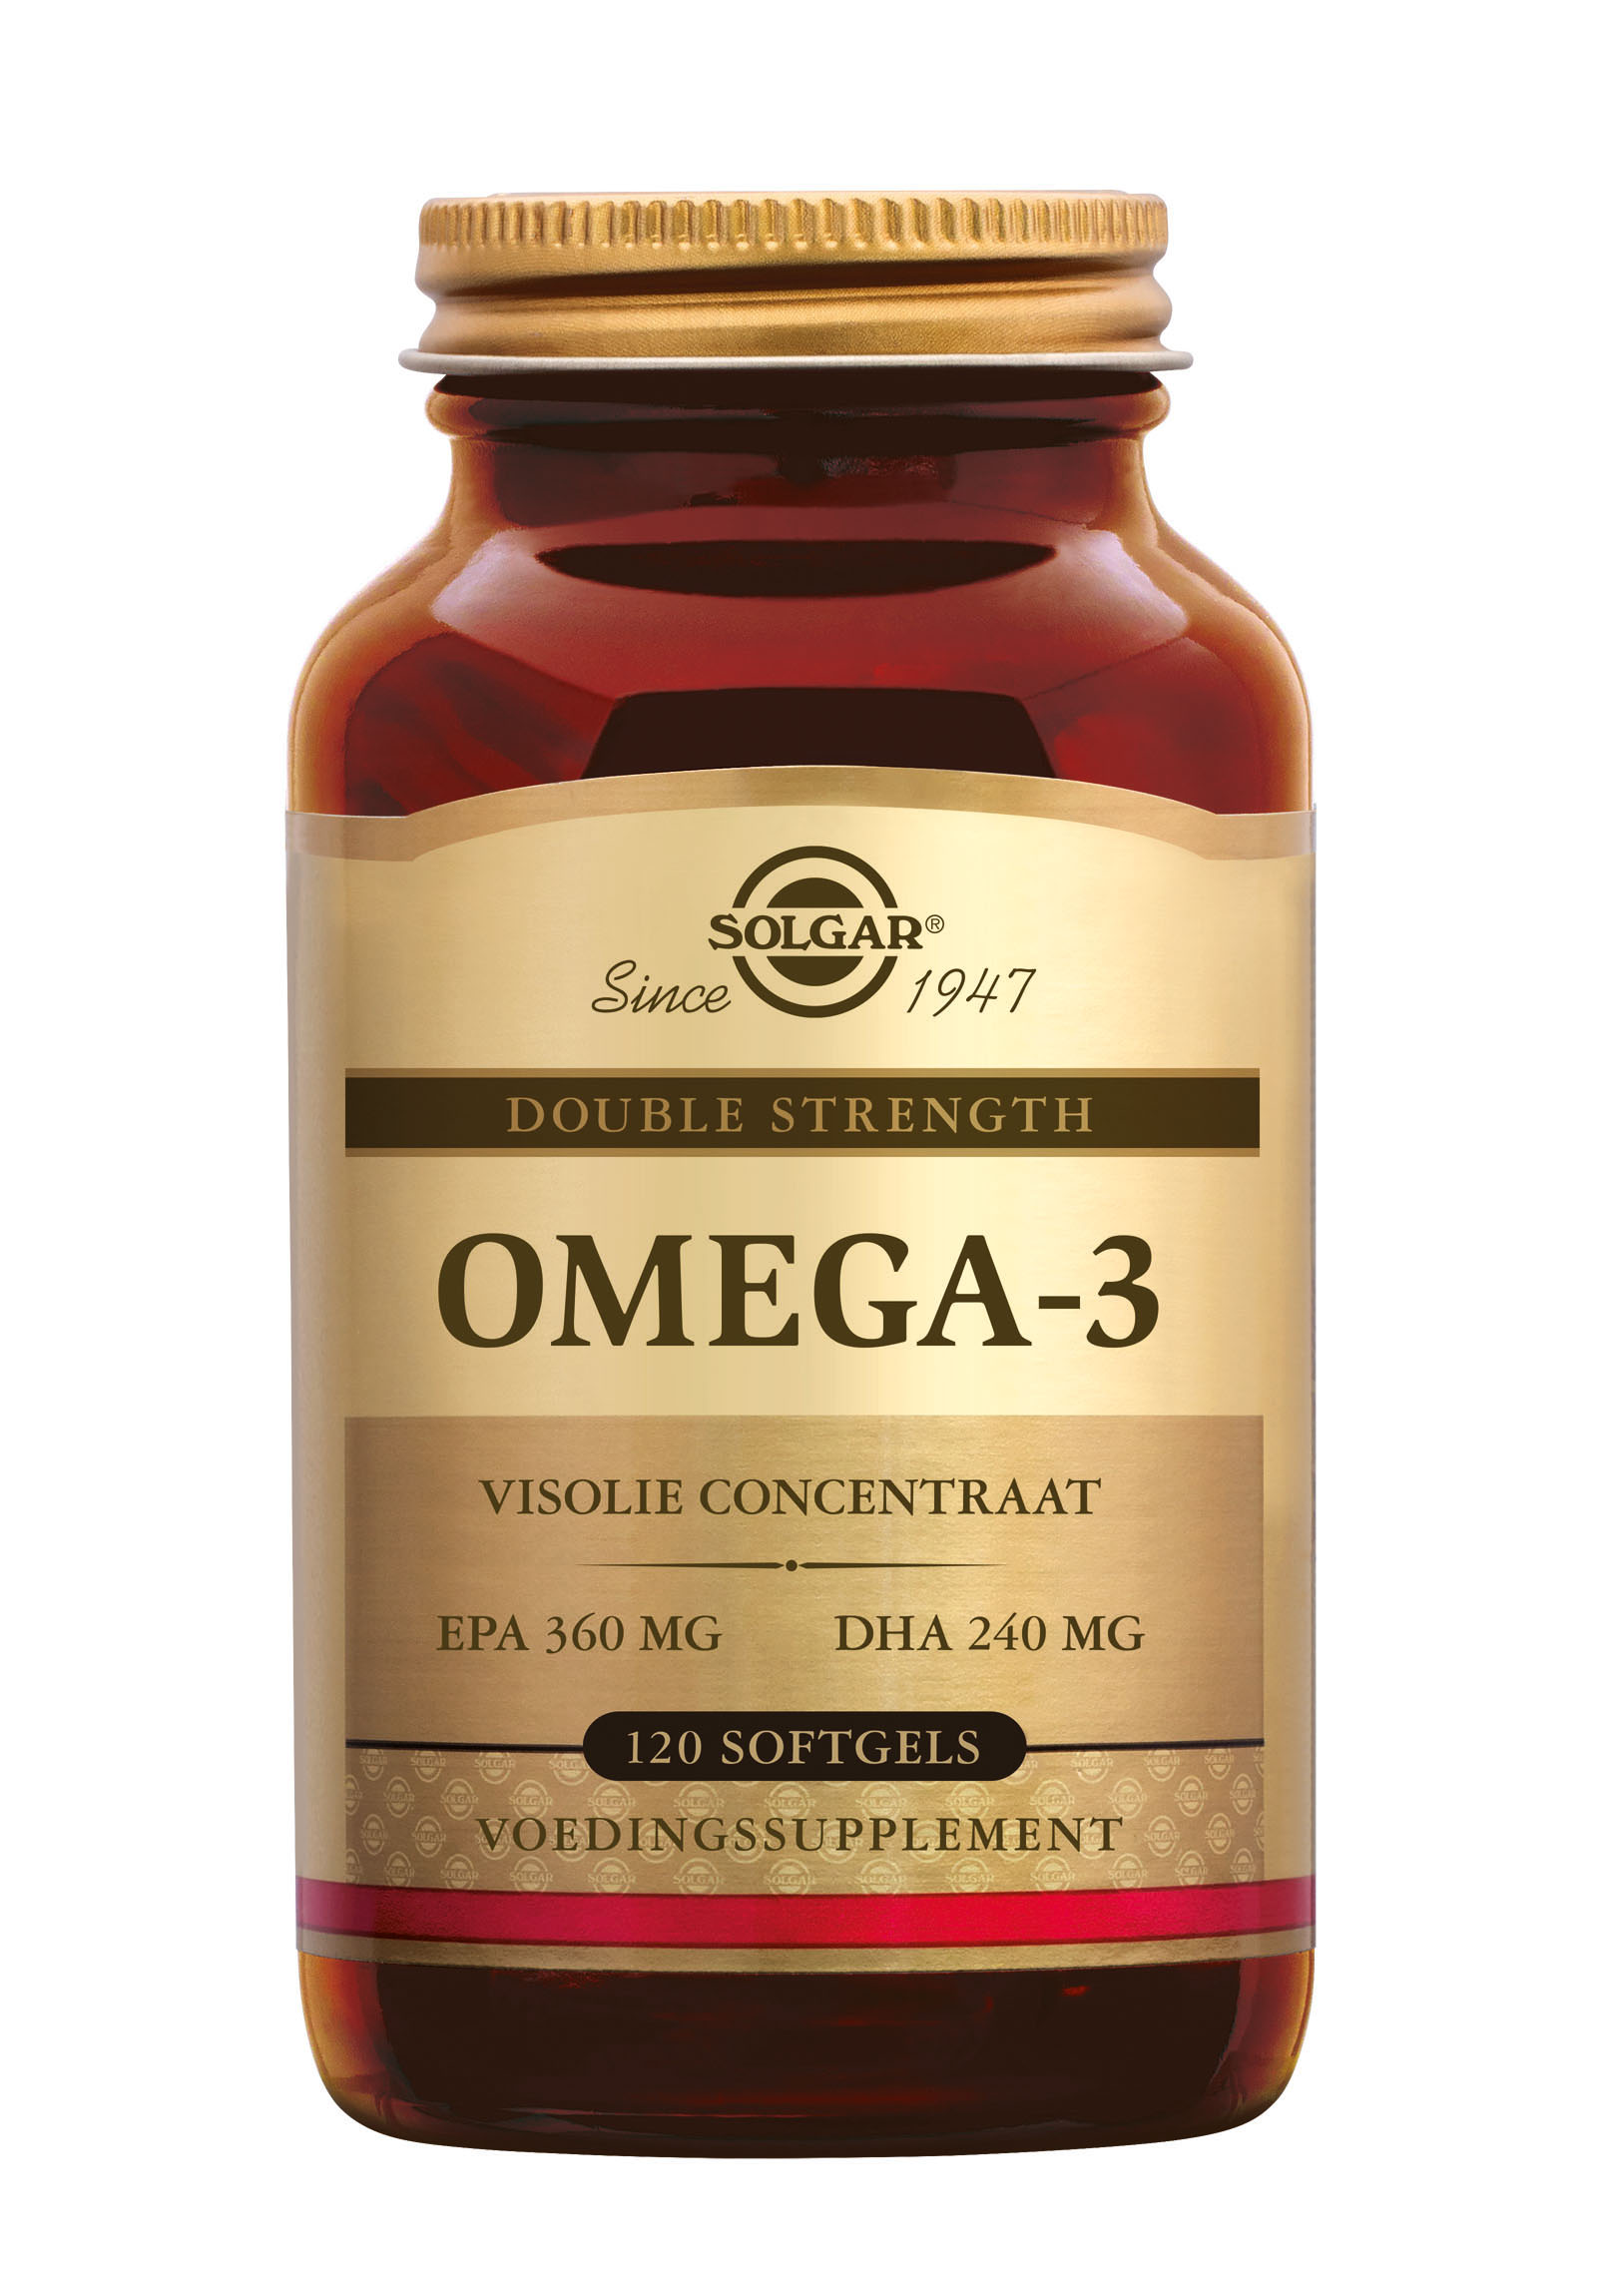 Solgar Omega-3 Double Strength (120 stuks)